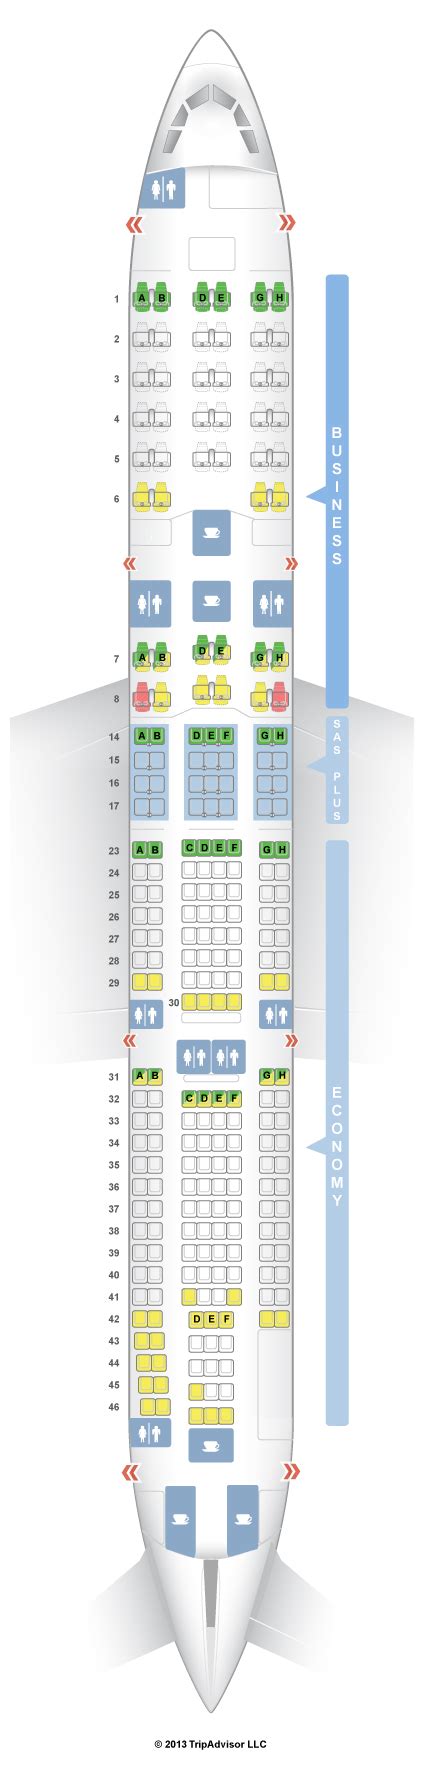 Seatguru Seat Map Sas Airbus A340 300 343 Travel Pinterest Sas